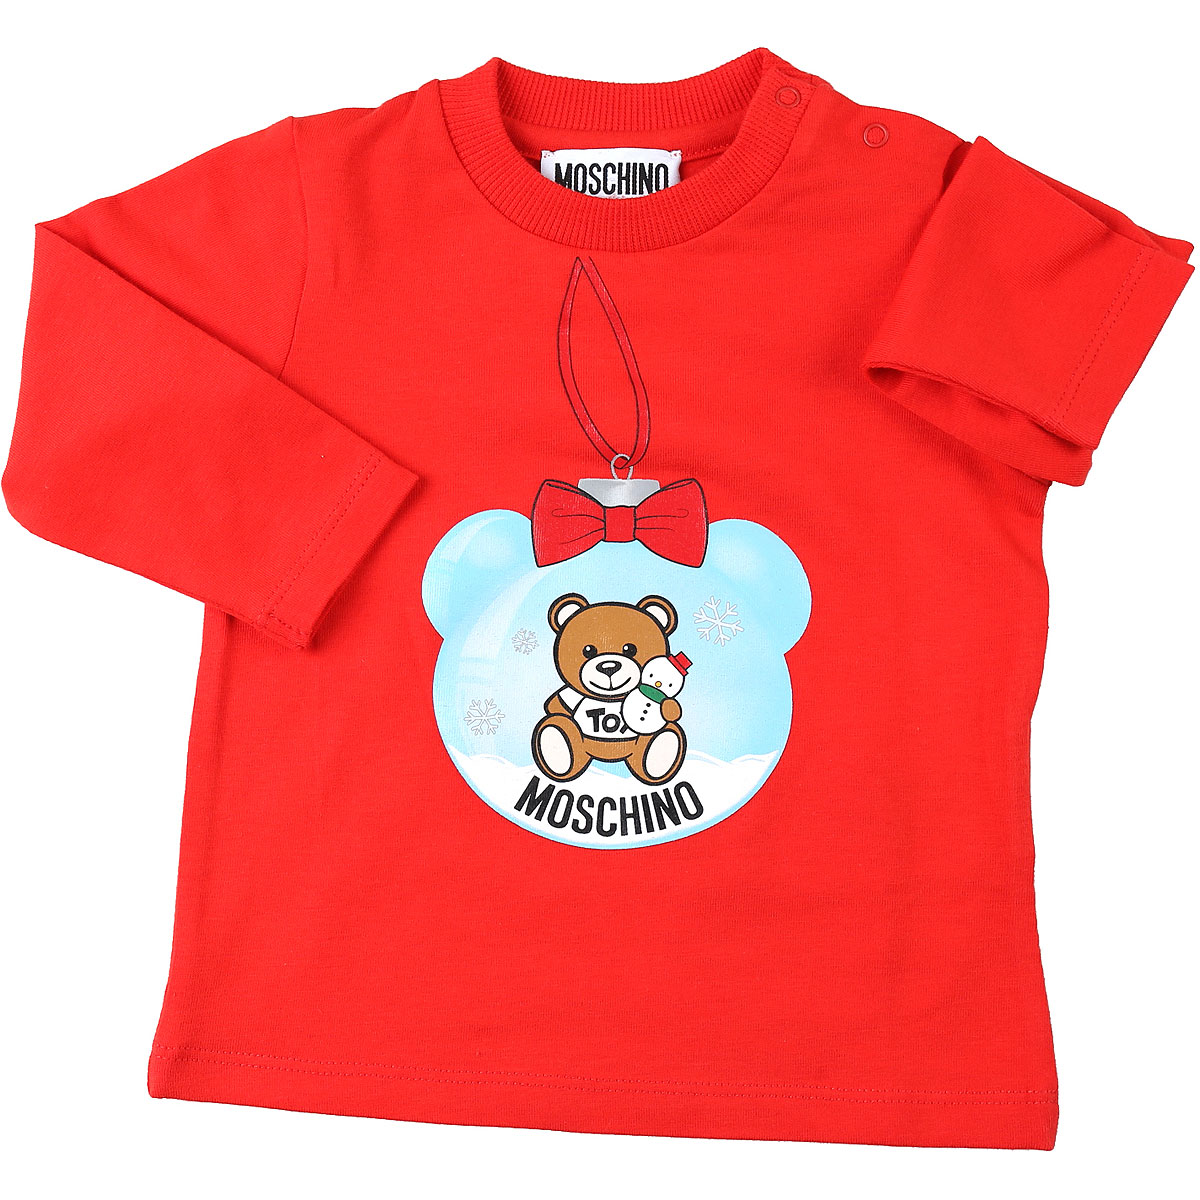 Moschino Baby T-Shirt für Mädchen Günstig im Sale, Rot, Baumwolle, 2017, 12M 18M 24M 2Y 3M 3Y 6M 9M